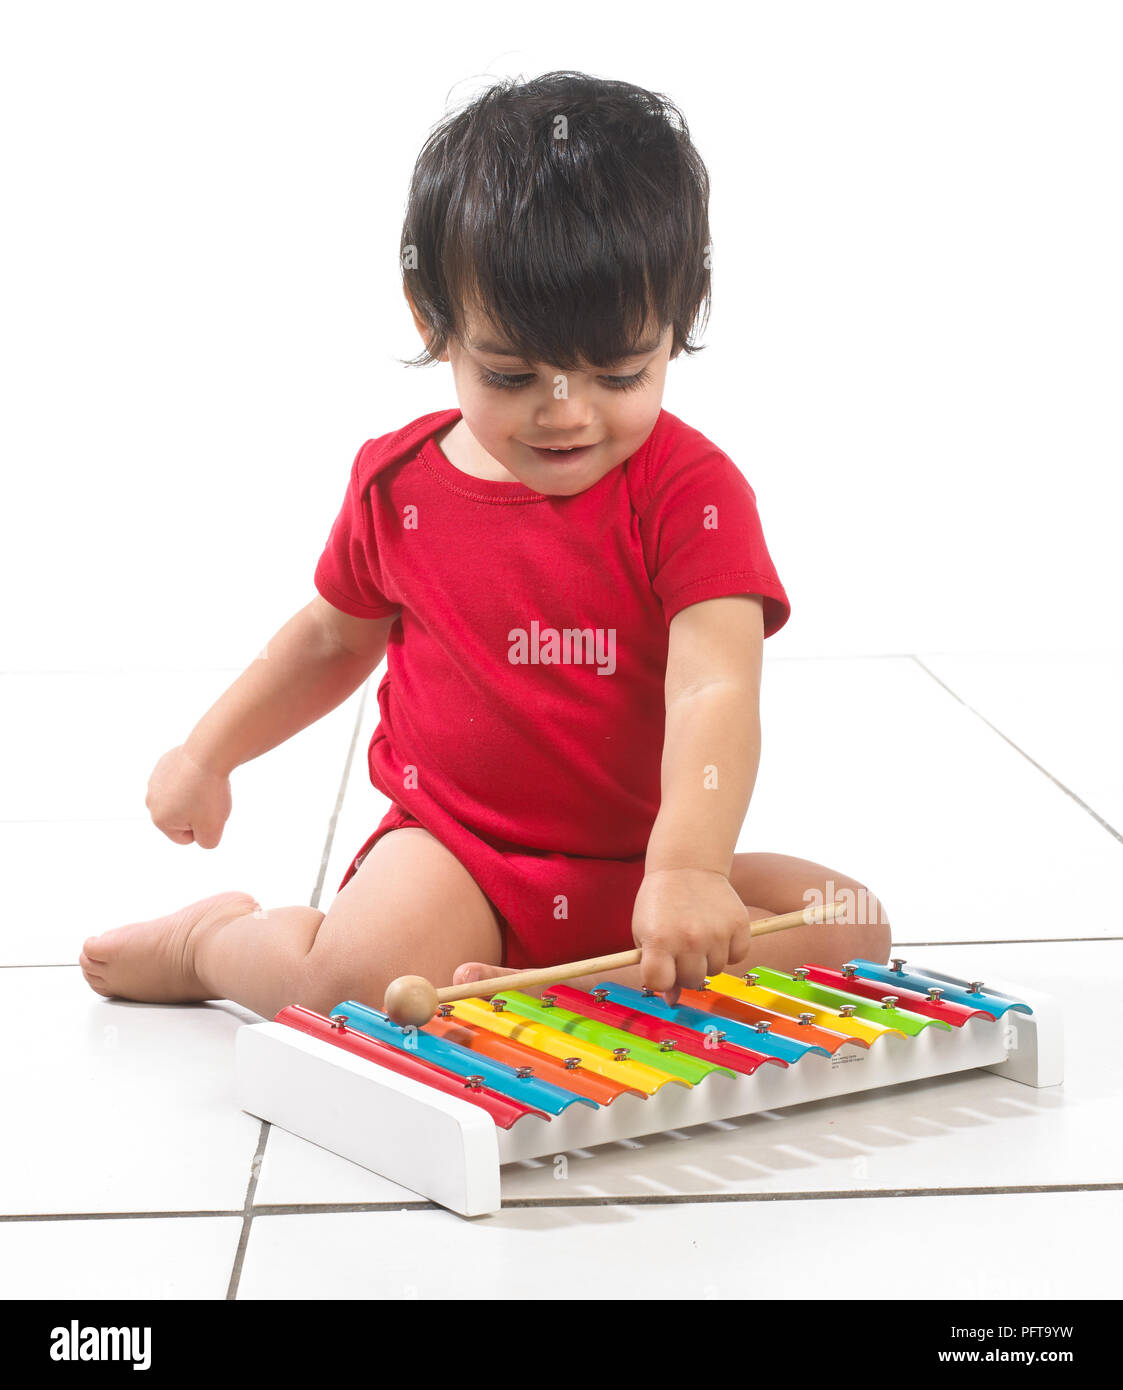 Garçon (16 mois) colorés de xylophone Banque D'Images